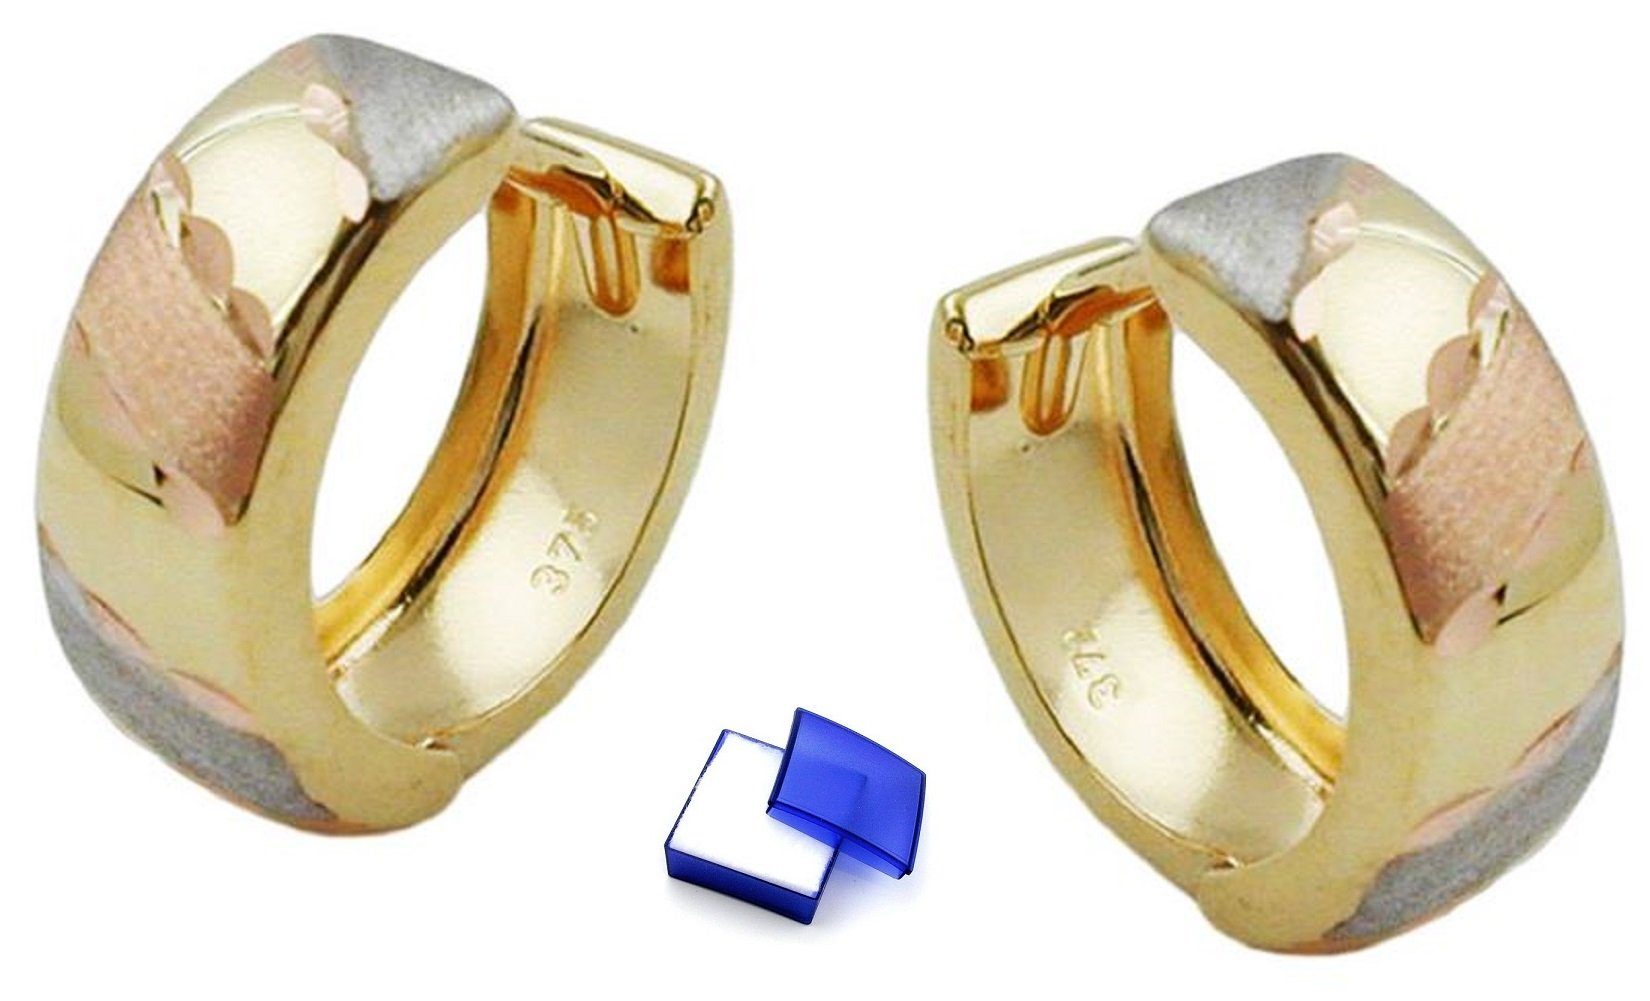 Damen Schmuck unbespielt Paar Creolen Ohrringe Creolen 12 x 5 mm diamantiert Tricolor-Optik Klappscharnier 9 Karat 375 Gold inkl